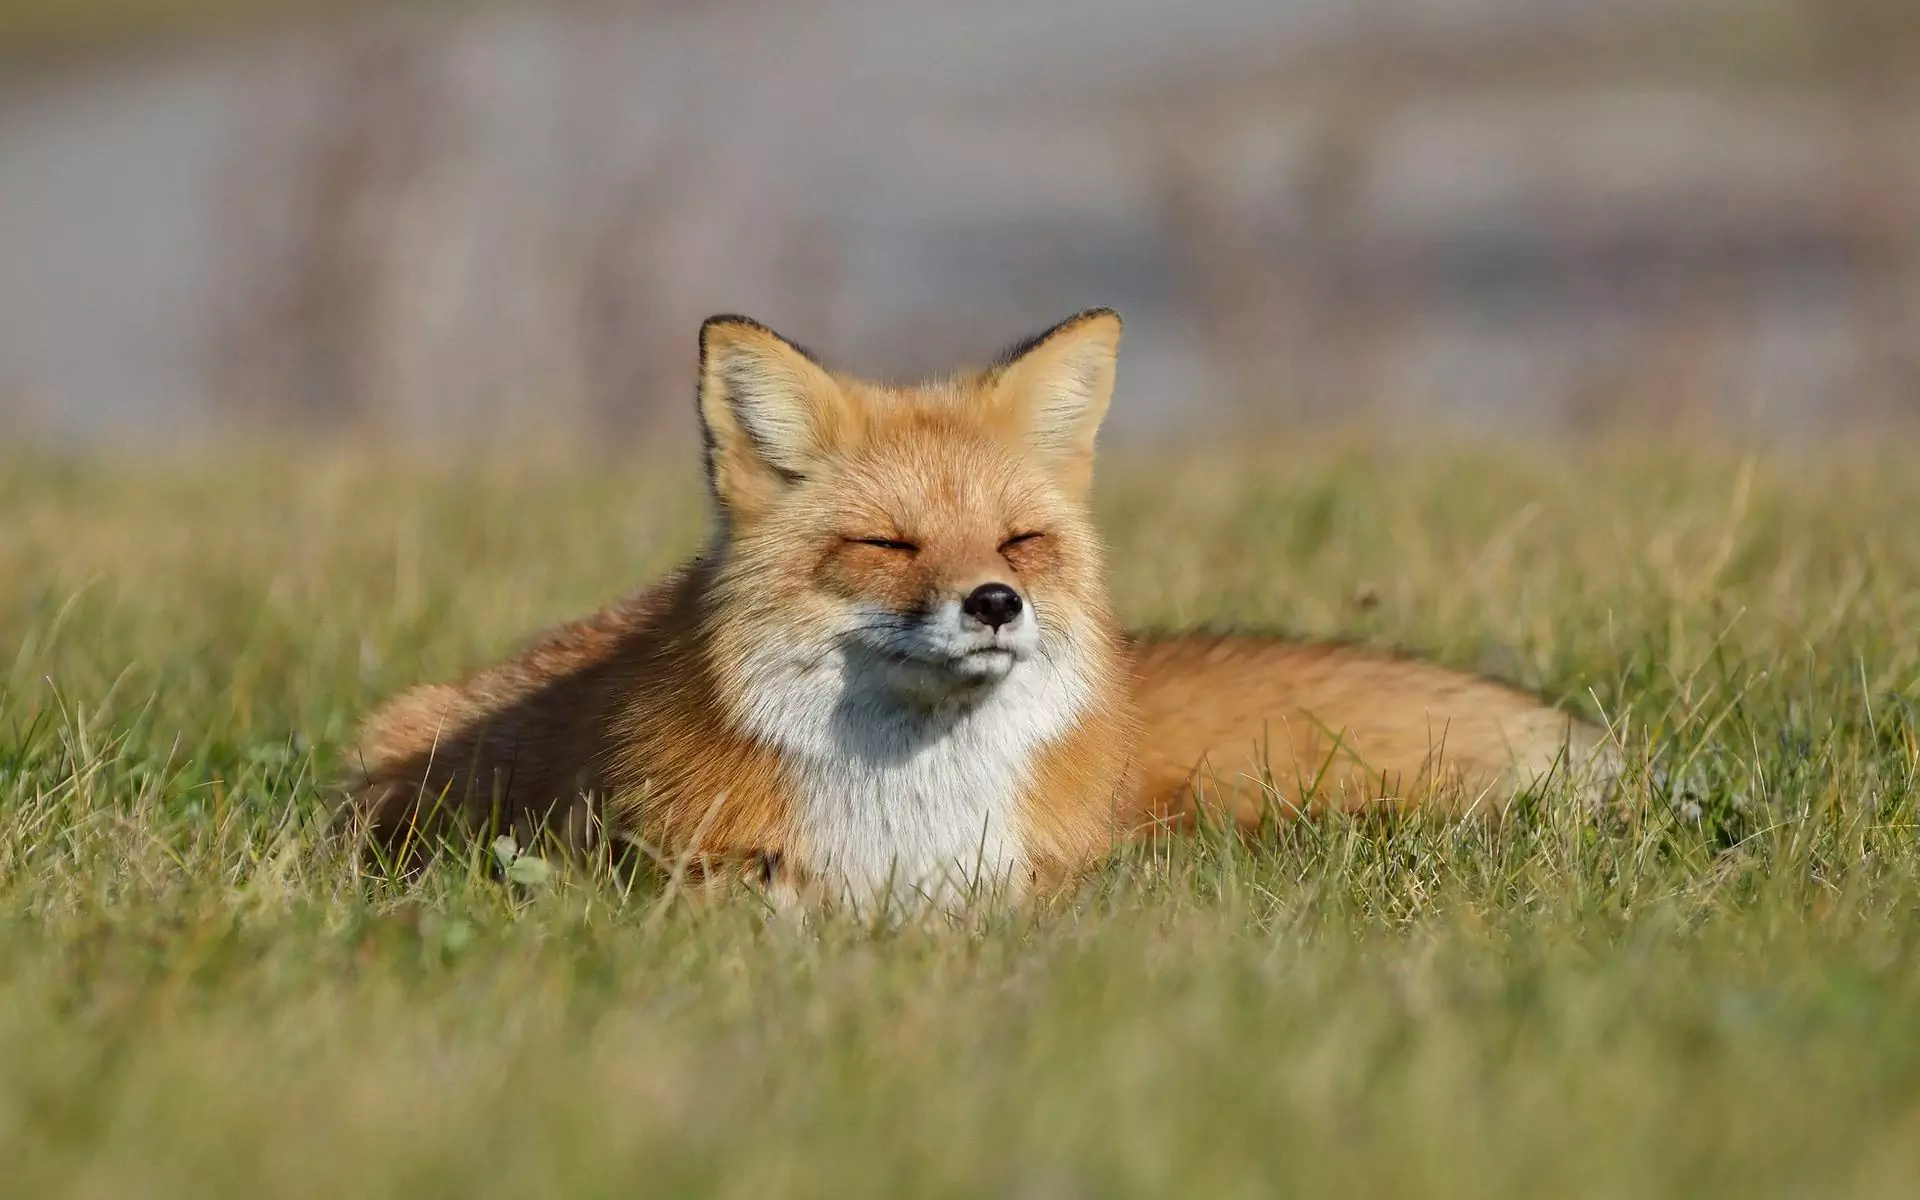 Is a fox a cat or a dog? What do foxes like to eat